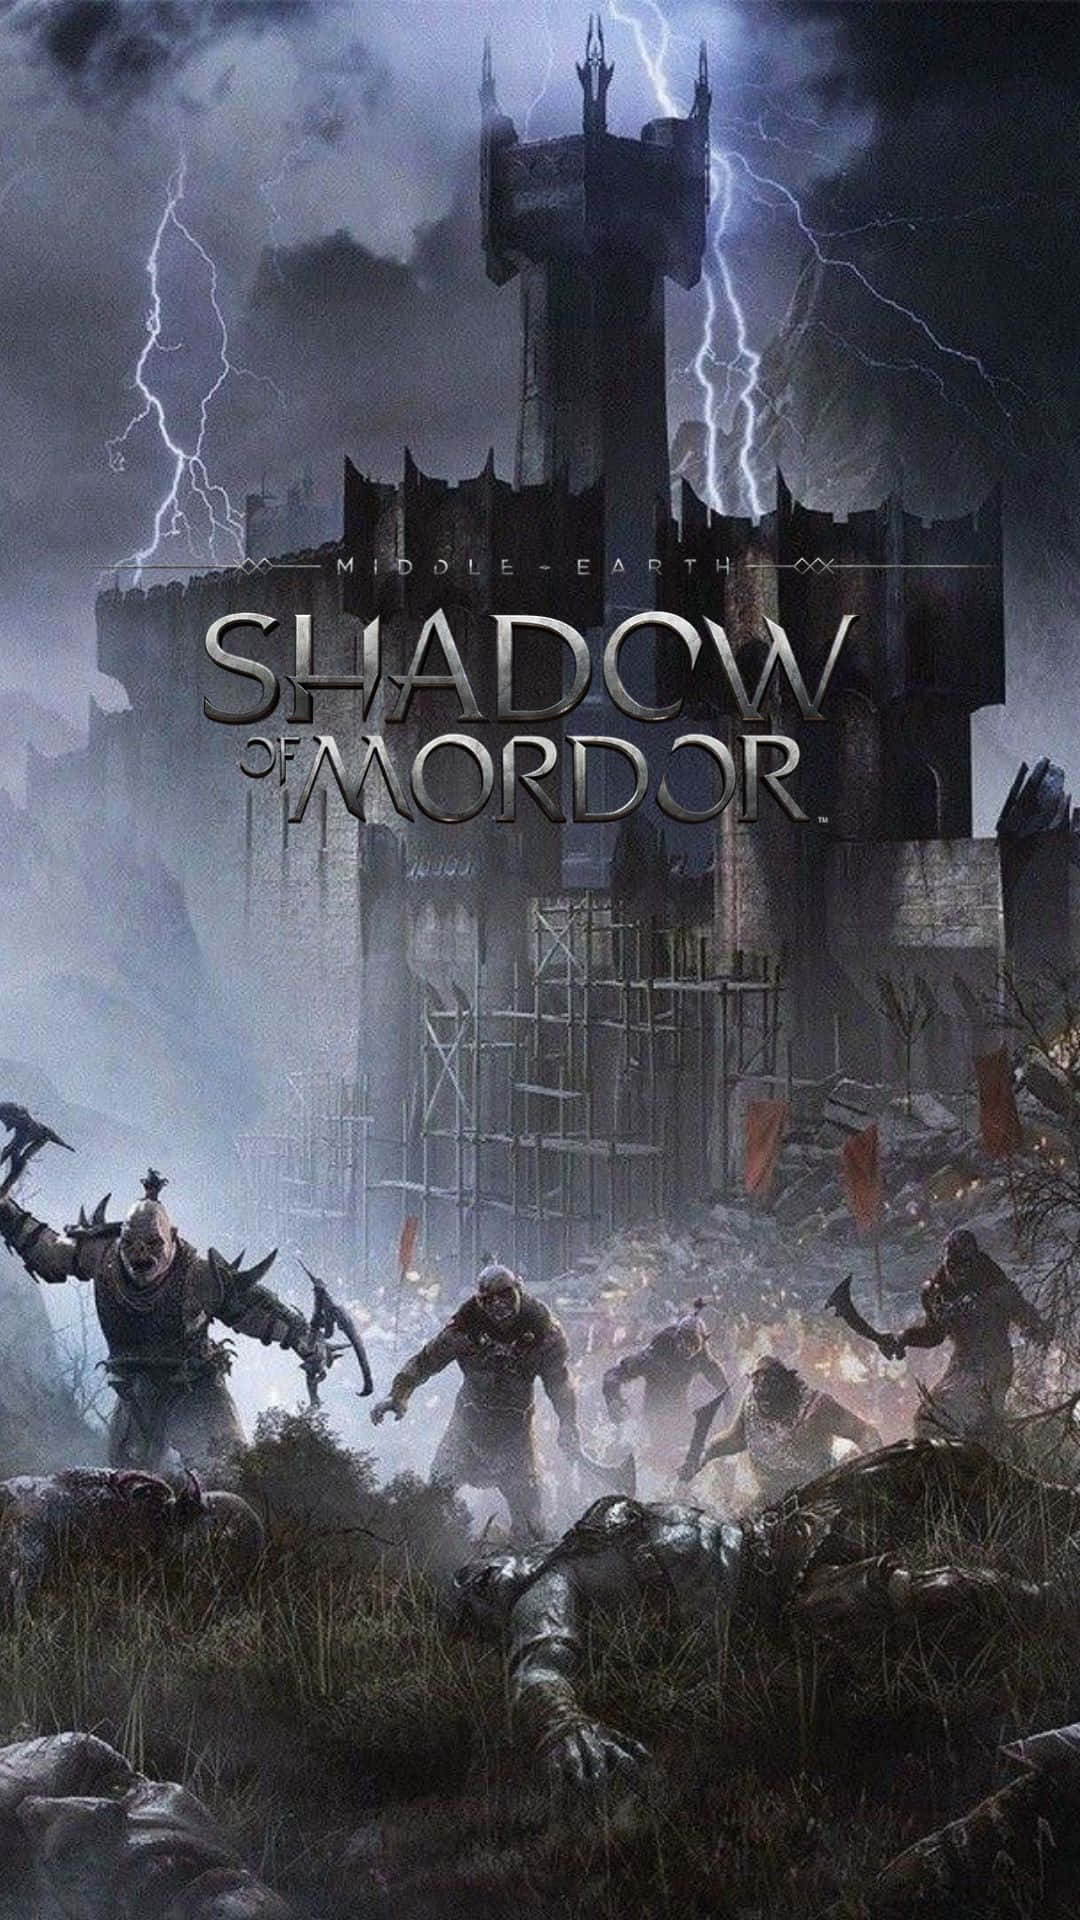 Utforskaden Episka Historien Om Midgård Med Android Shadow Of Mordor Som Bakgrundsbild.